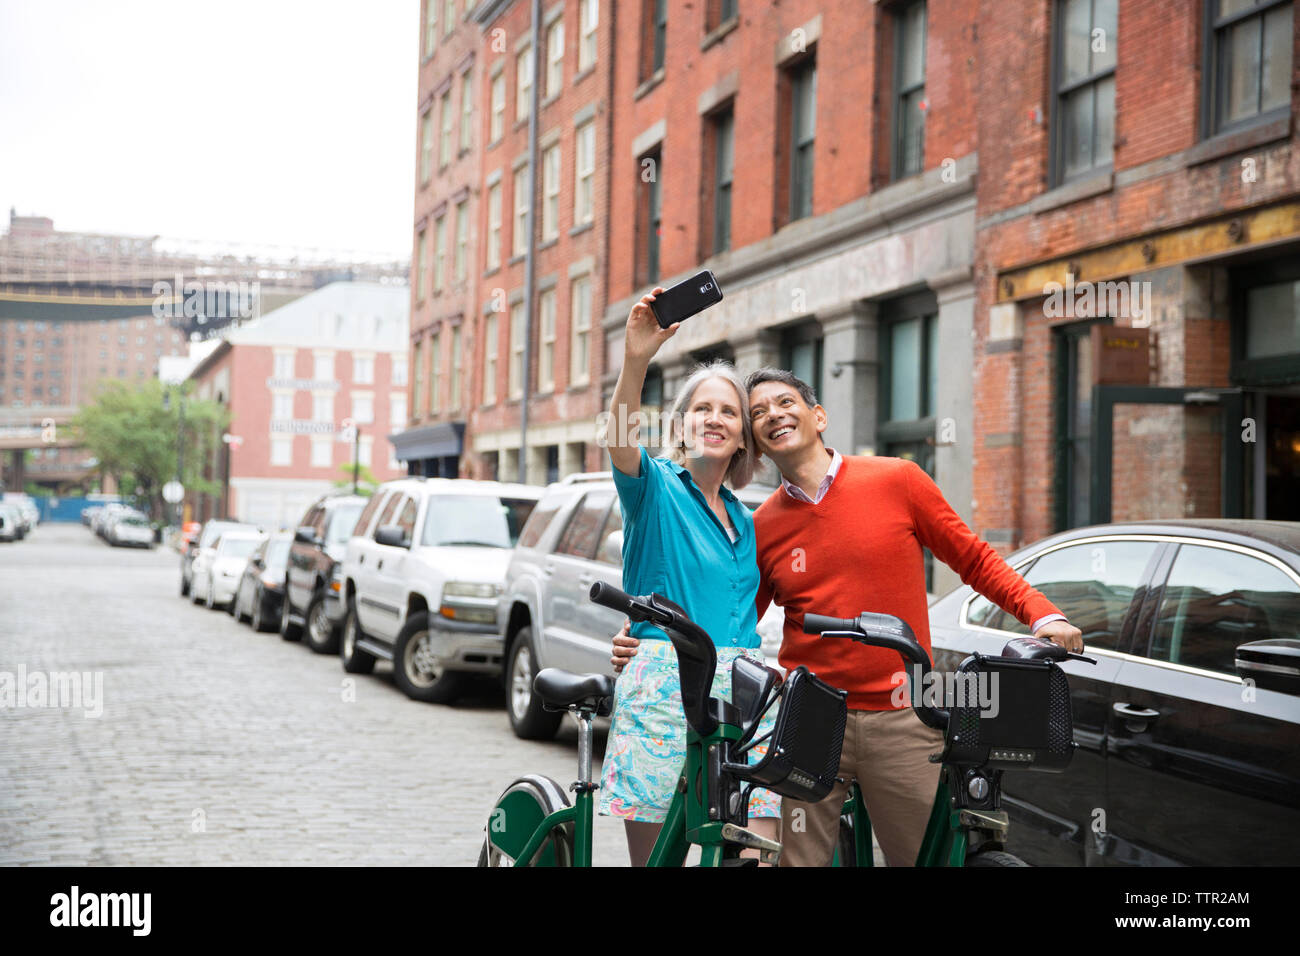 Couple en tenant debout selfies avec des vélos on city street Banque D'Images